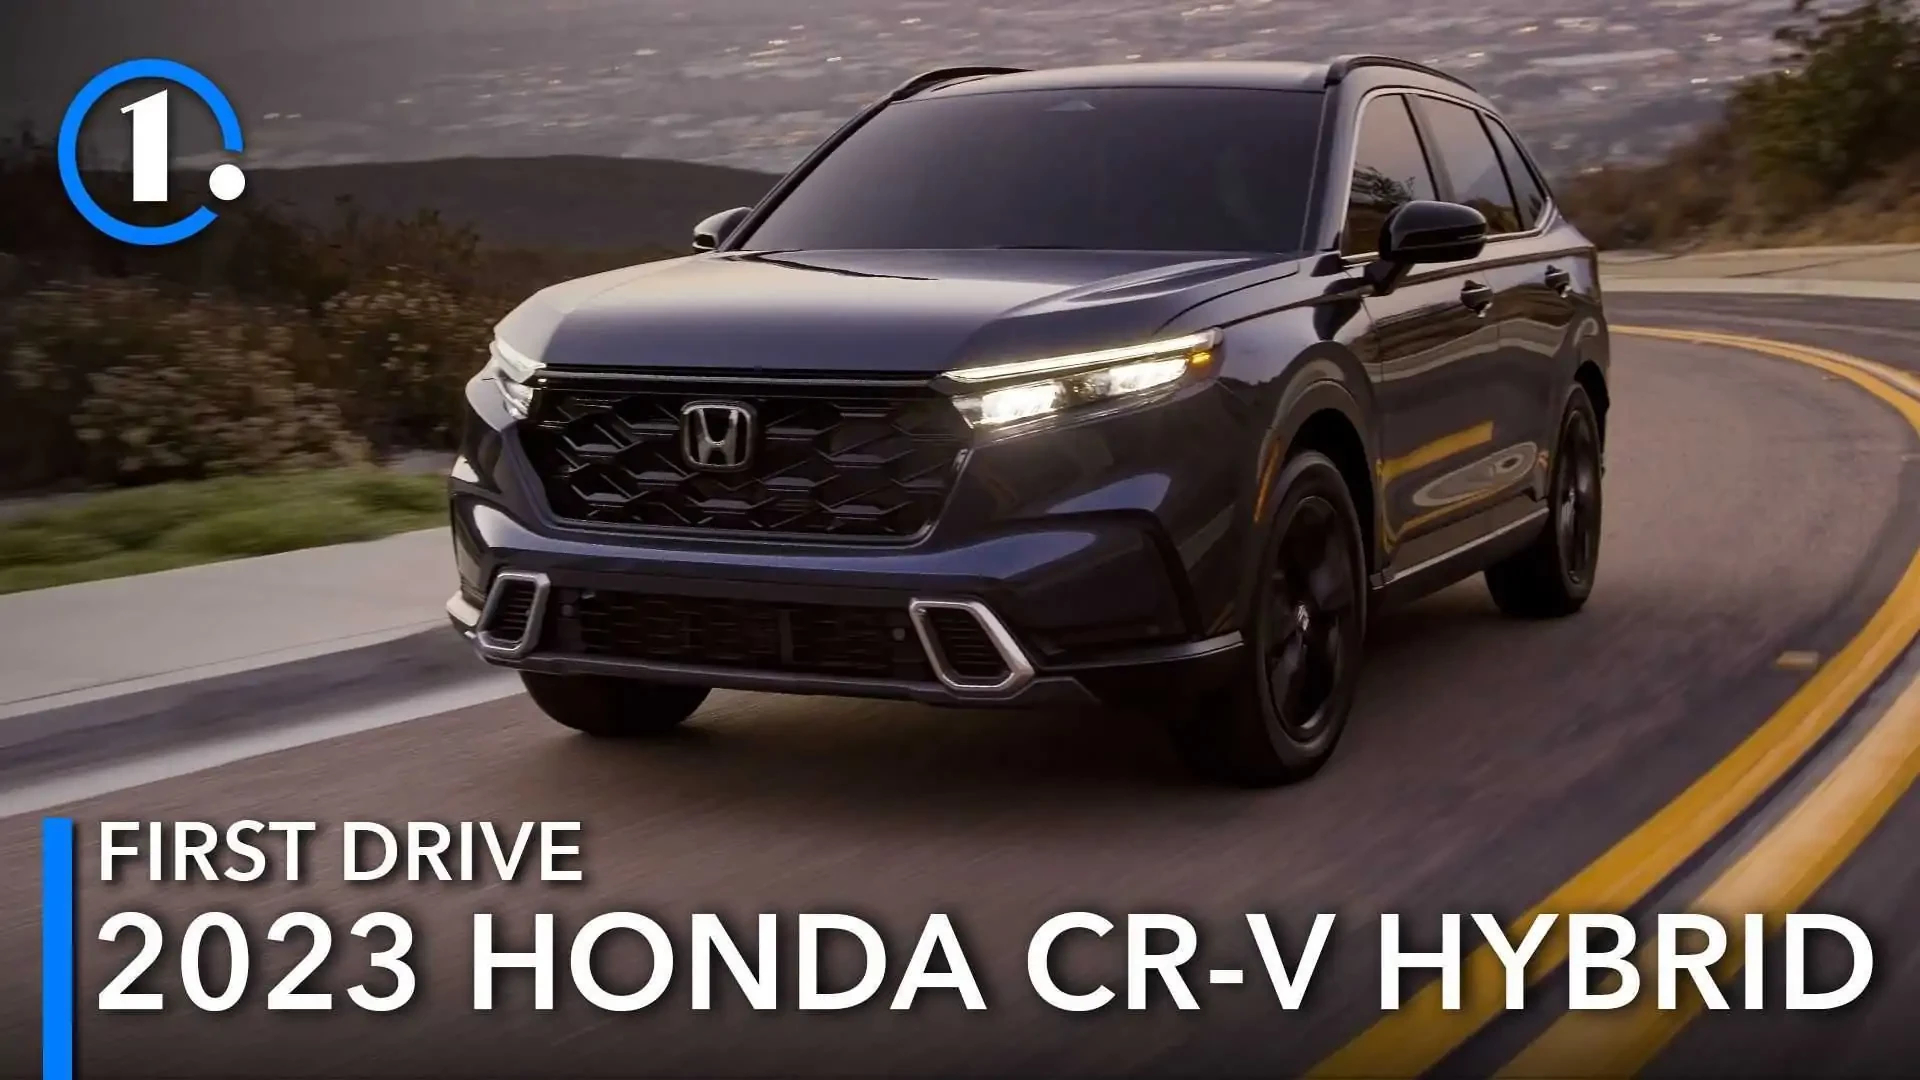 2023 Honda Crv Hybrid Spy Shoot